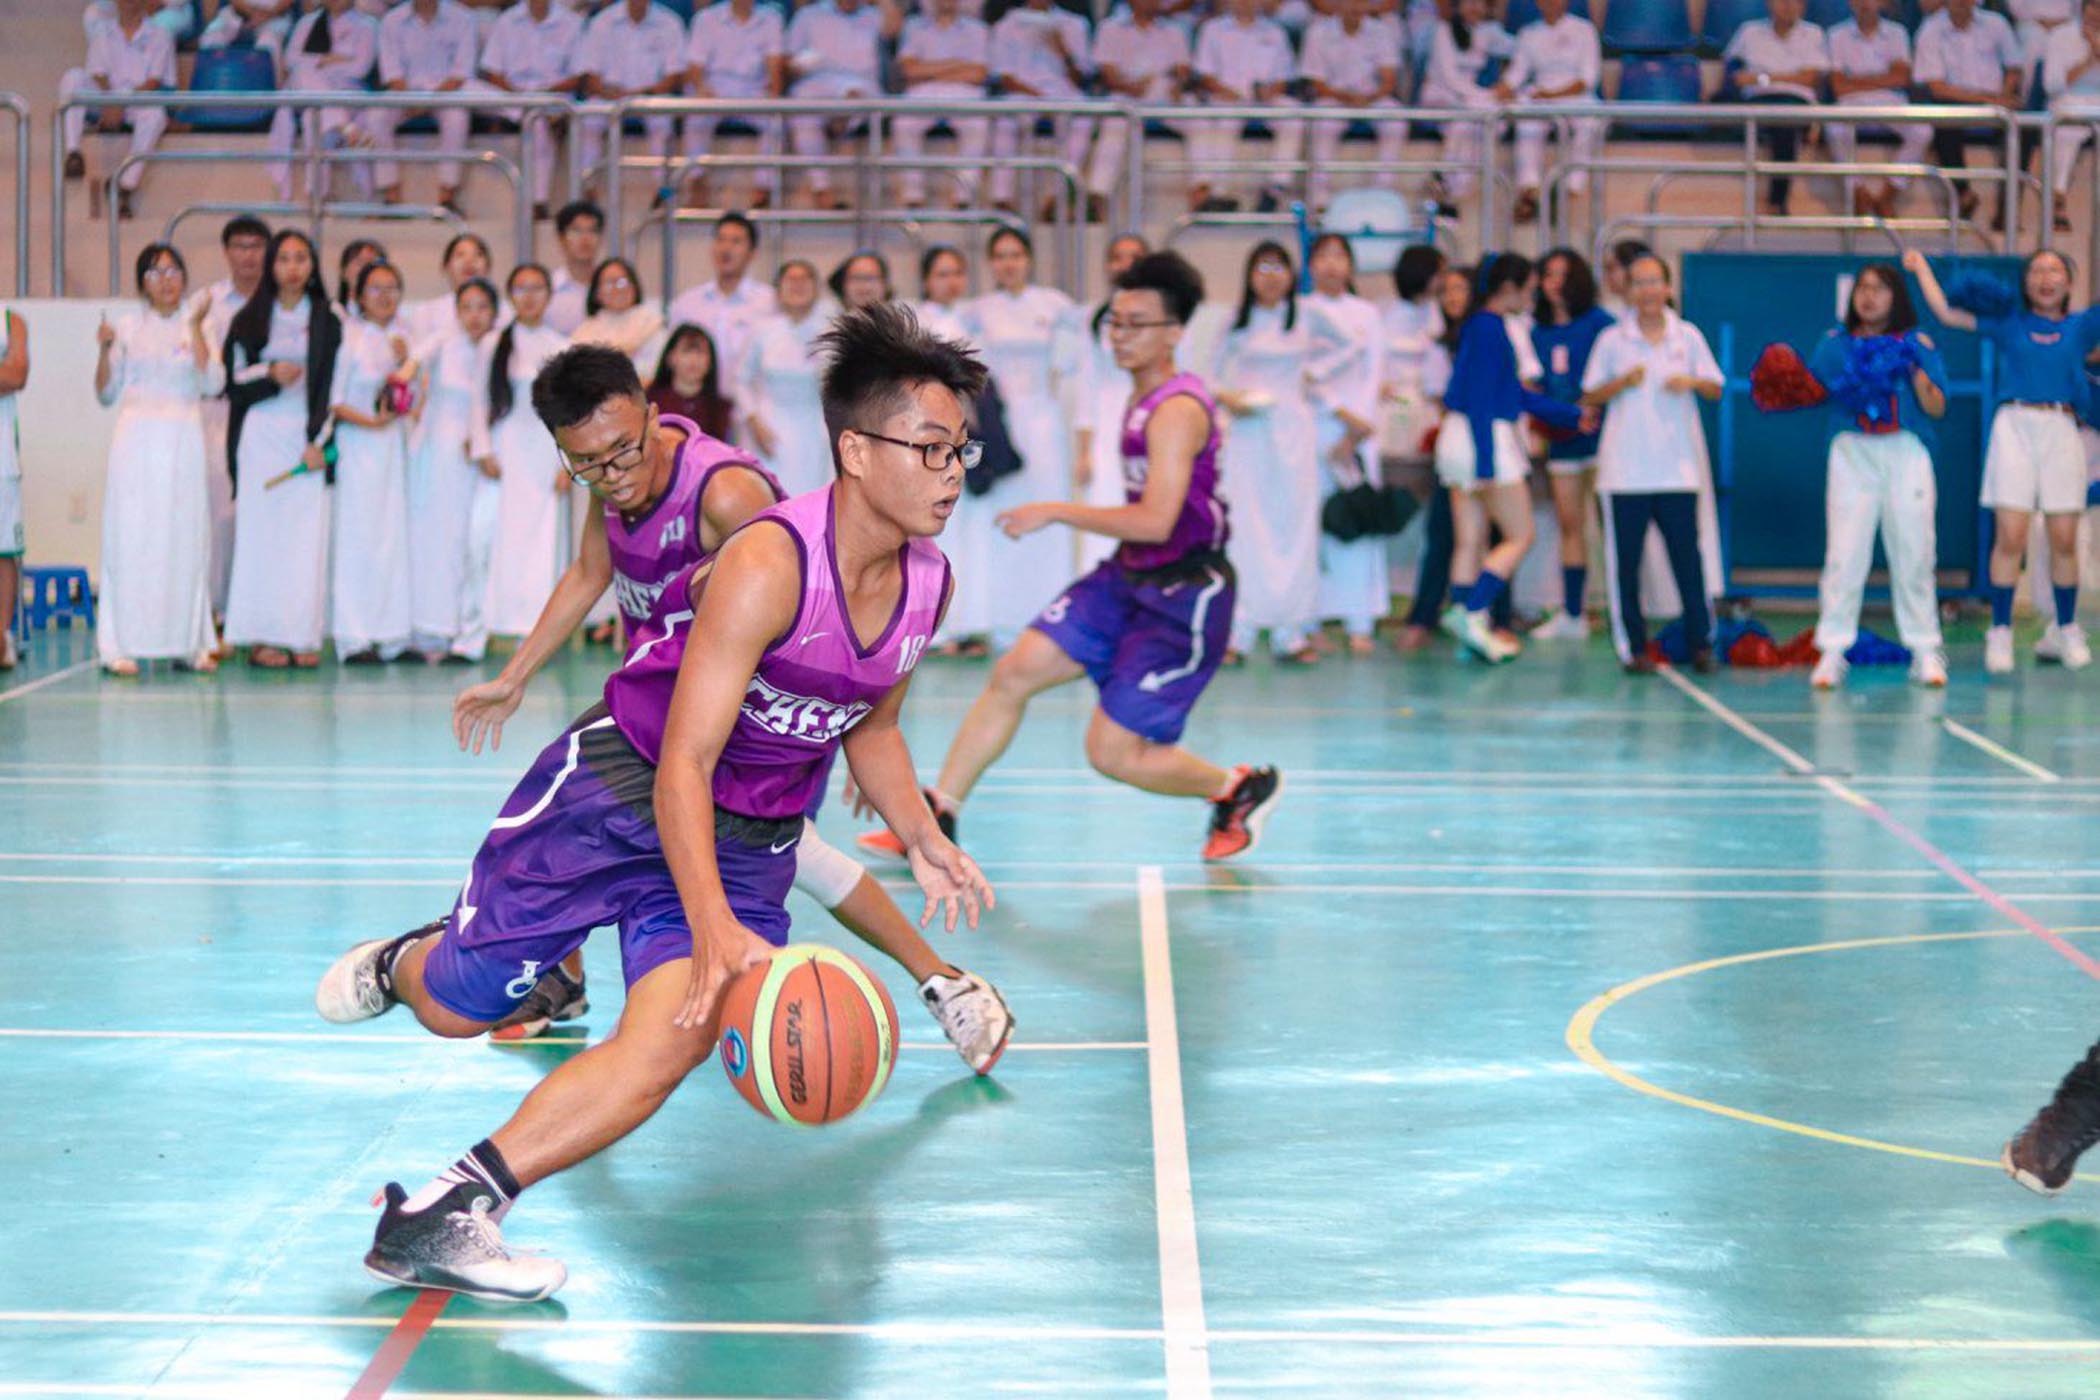 HS Trường THPT chuyên Lê Quý Đôn tham gia các hoạt động thể dục thể thao trong nhà trường. Ảnh: KHÁNH CHI